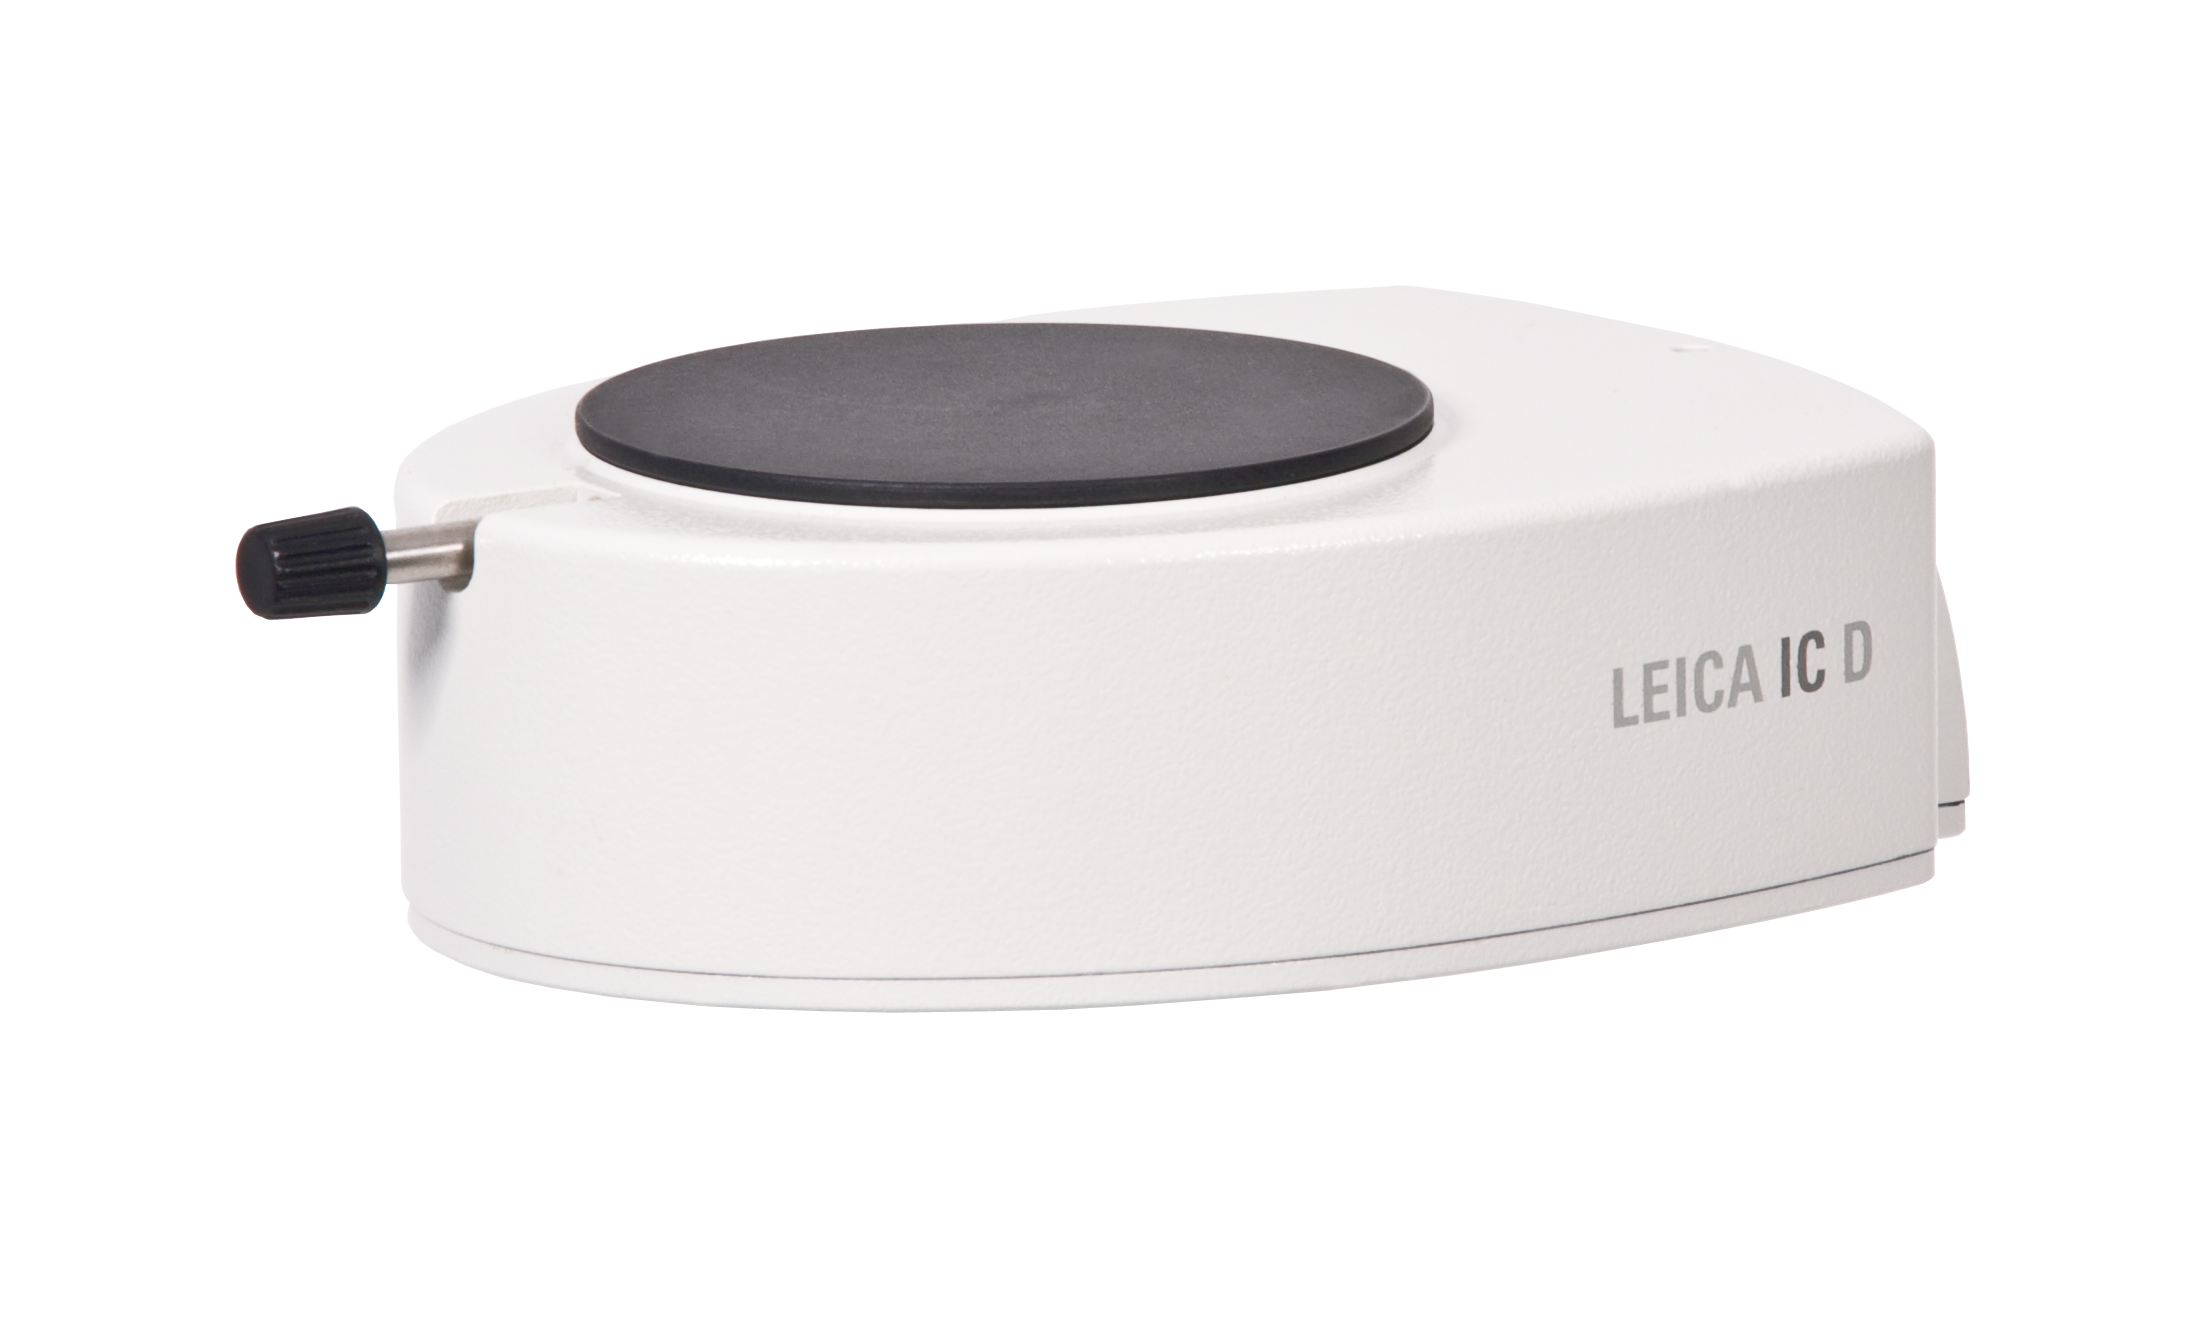 La cámara Leica IC D constituye una solución potente, ergonómica y rentable para la microfotografía digital profesional.